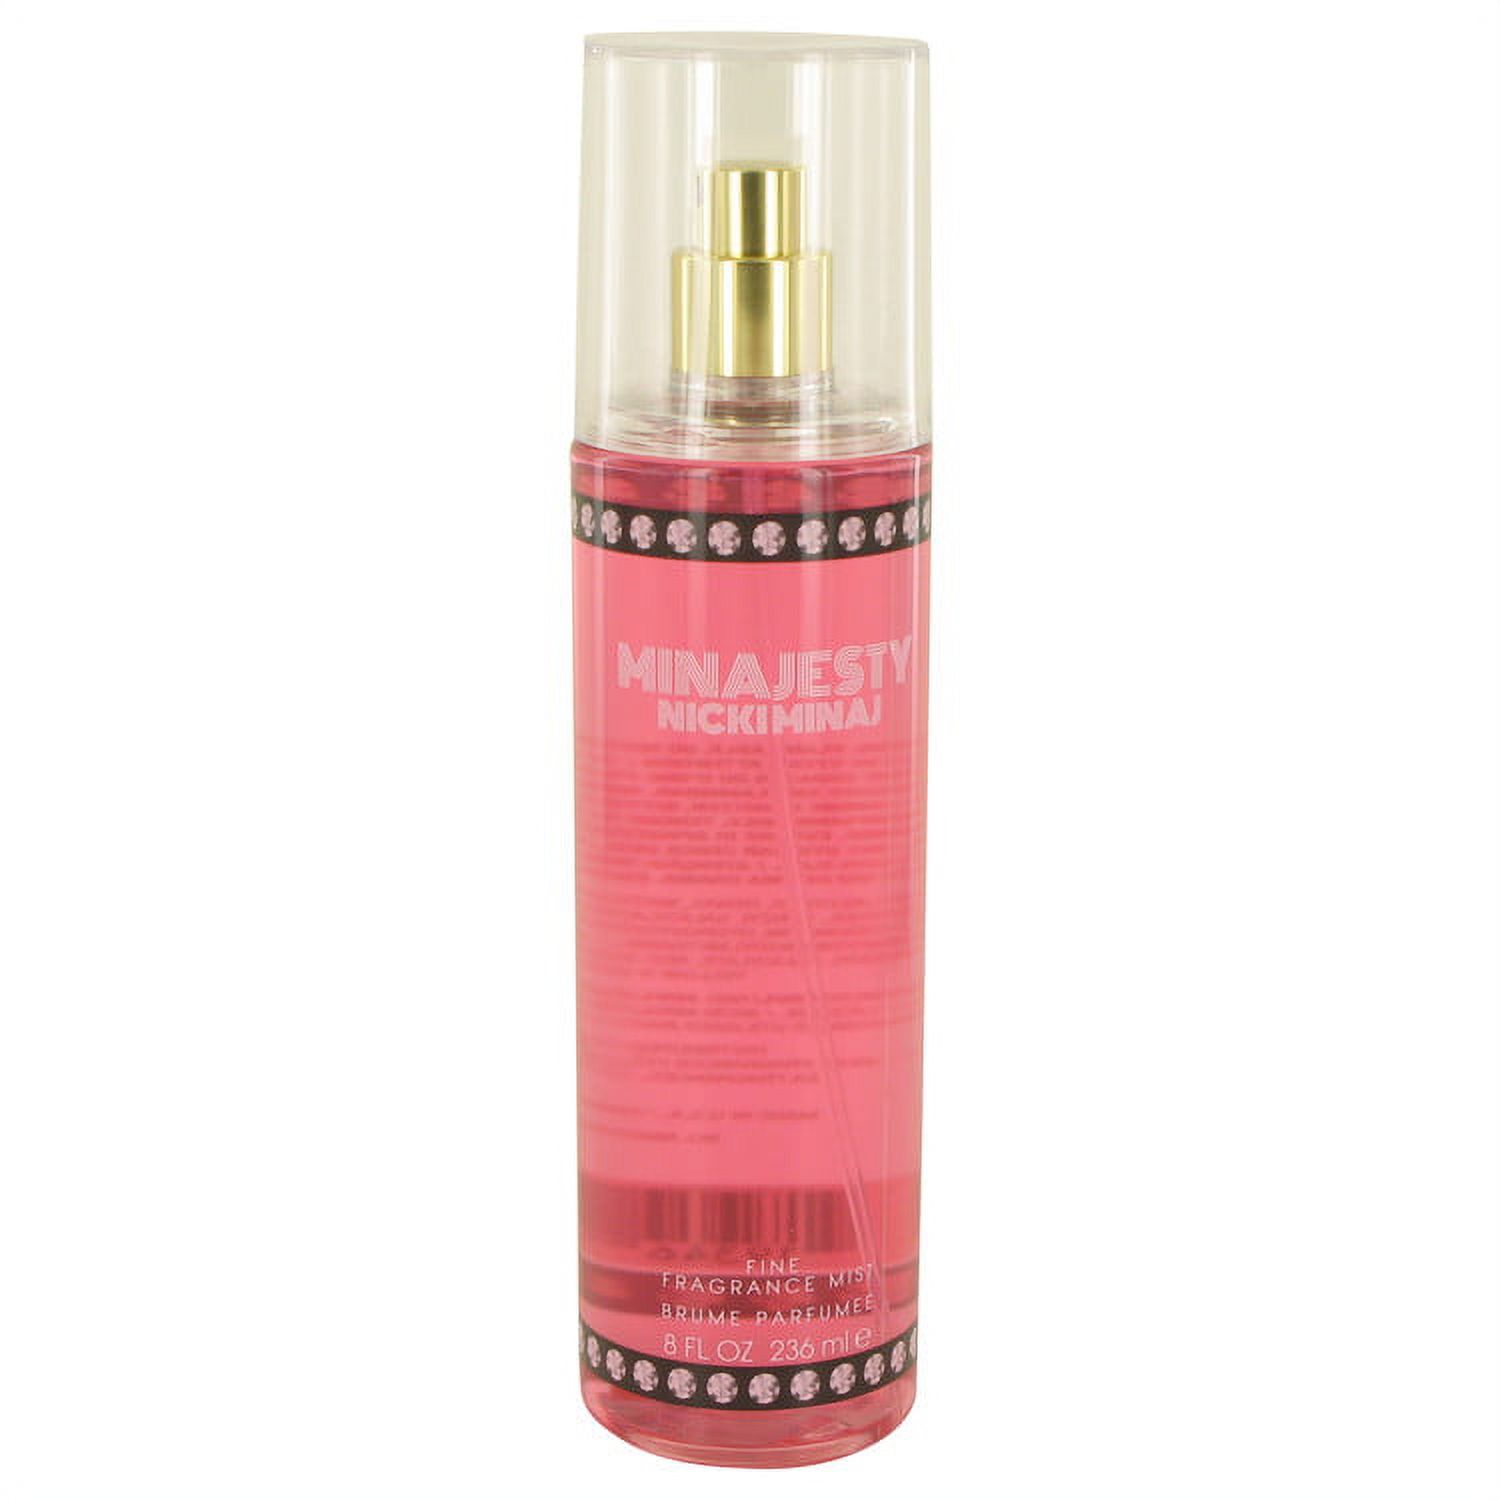 Women Fragrance Mist 8 oz By Nicki Minaj - image 1 of 1